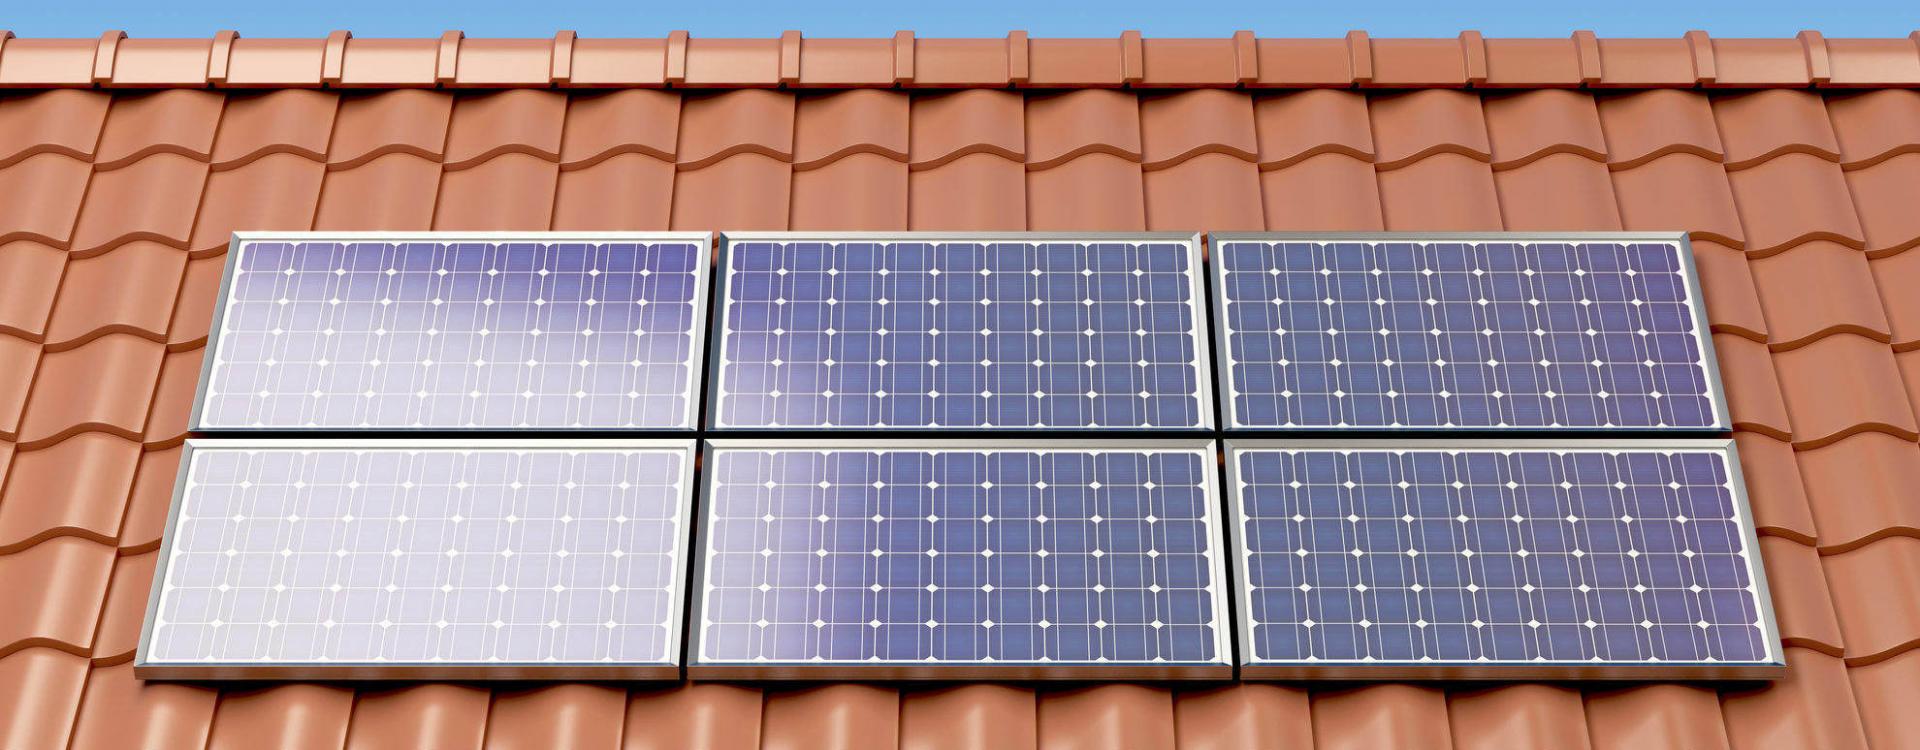 Impianti solari per privati